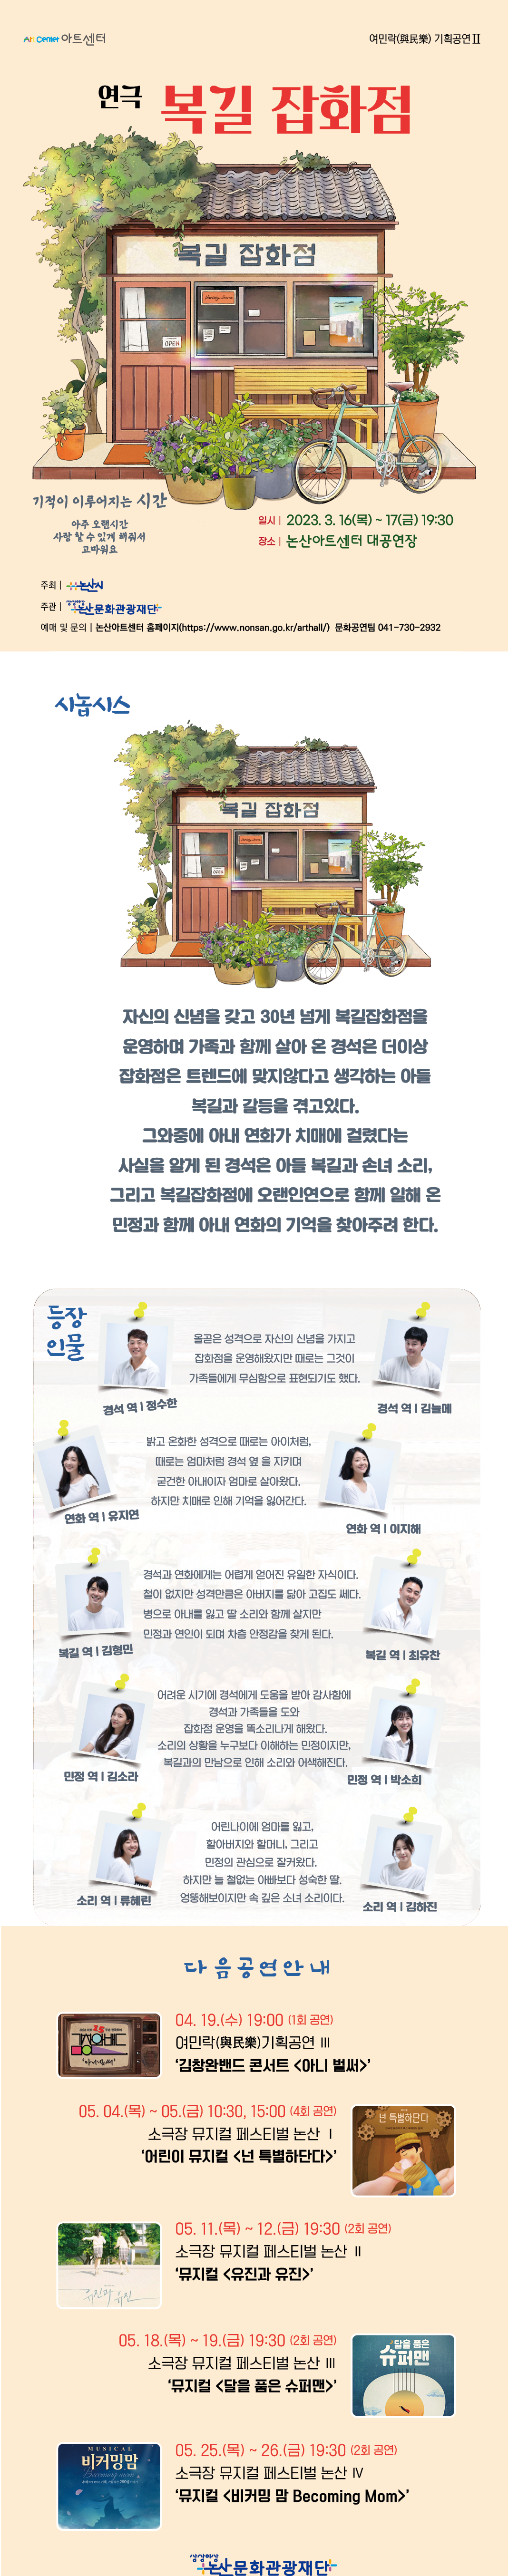 여민락(與民樂) 기획공연 Ⅱ ‘ 연극 [복길 잡화점] ’